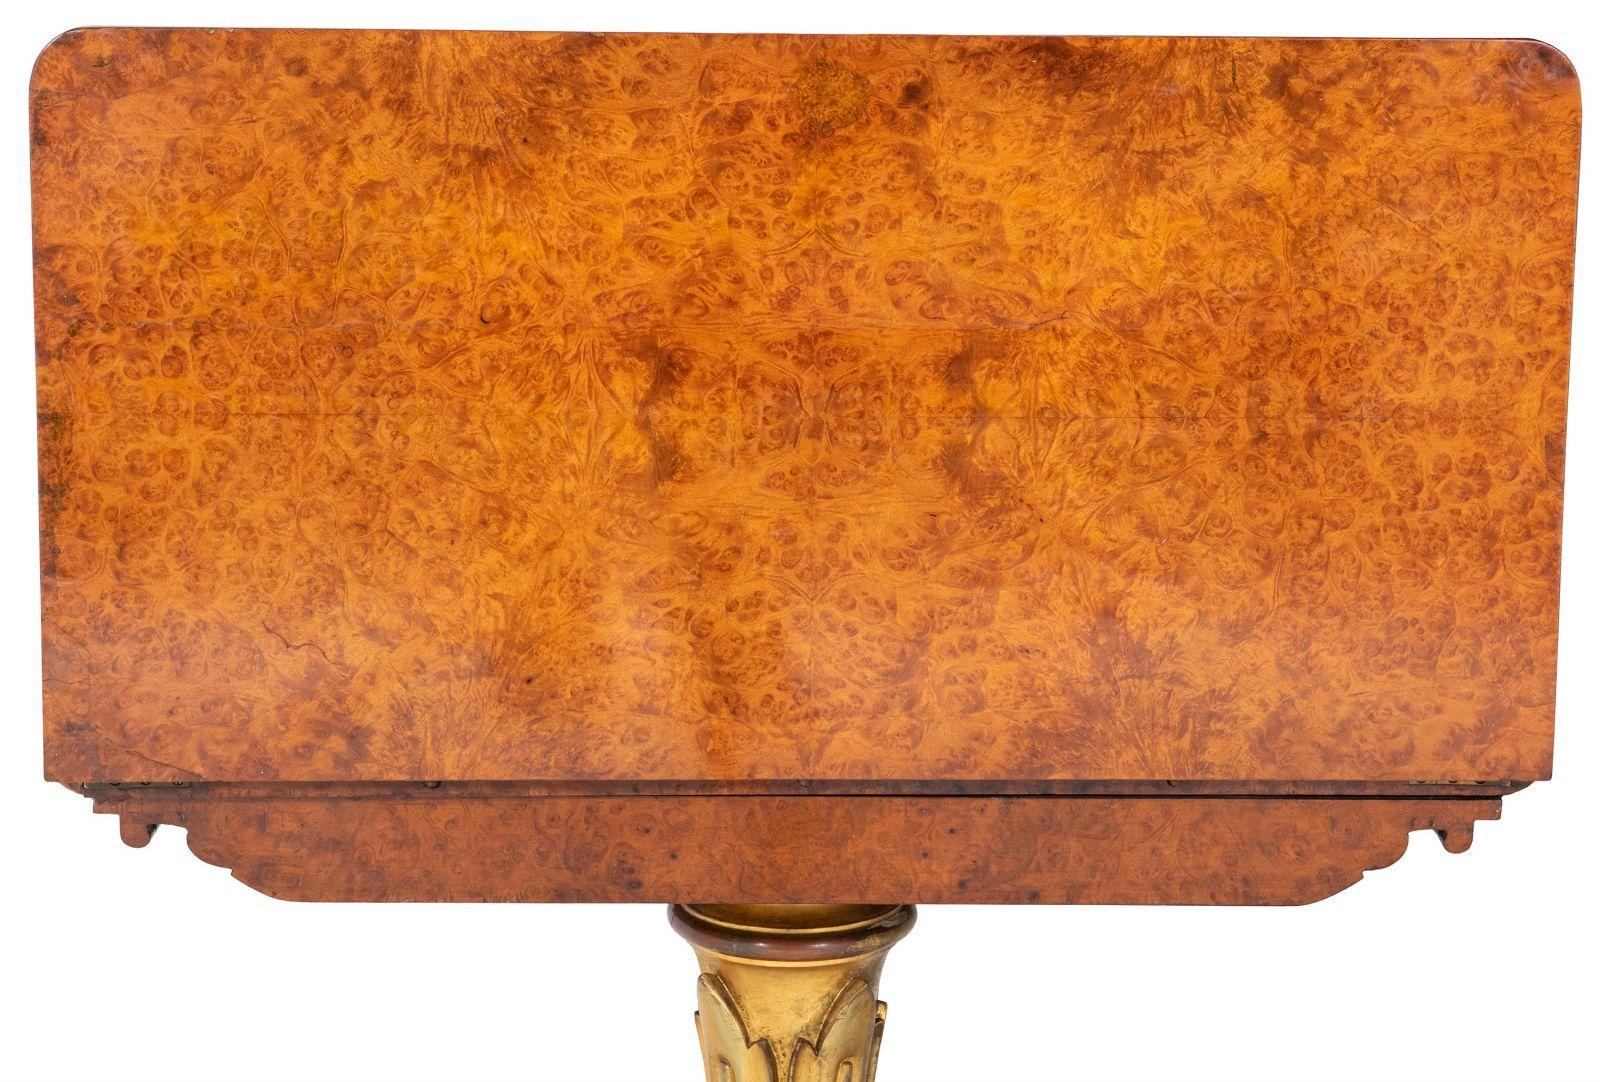 Voici une superbe table à cartes en amboyna George IV, ornée d'une décoration exquise en bois doré, qui illustre le summum de l'artisanat d'art de l'époque anglaise vers 1830.

Cette table remarquable est dotée d'un plateau pivotant qui se replie